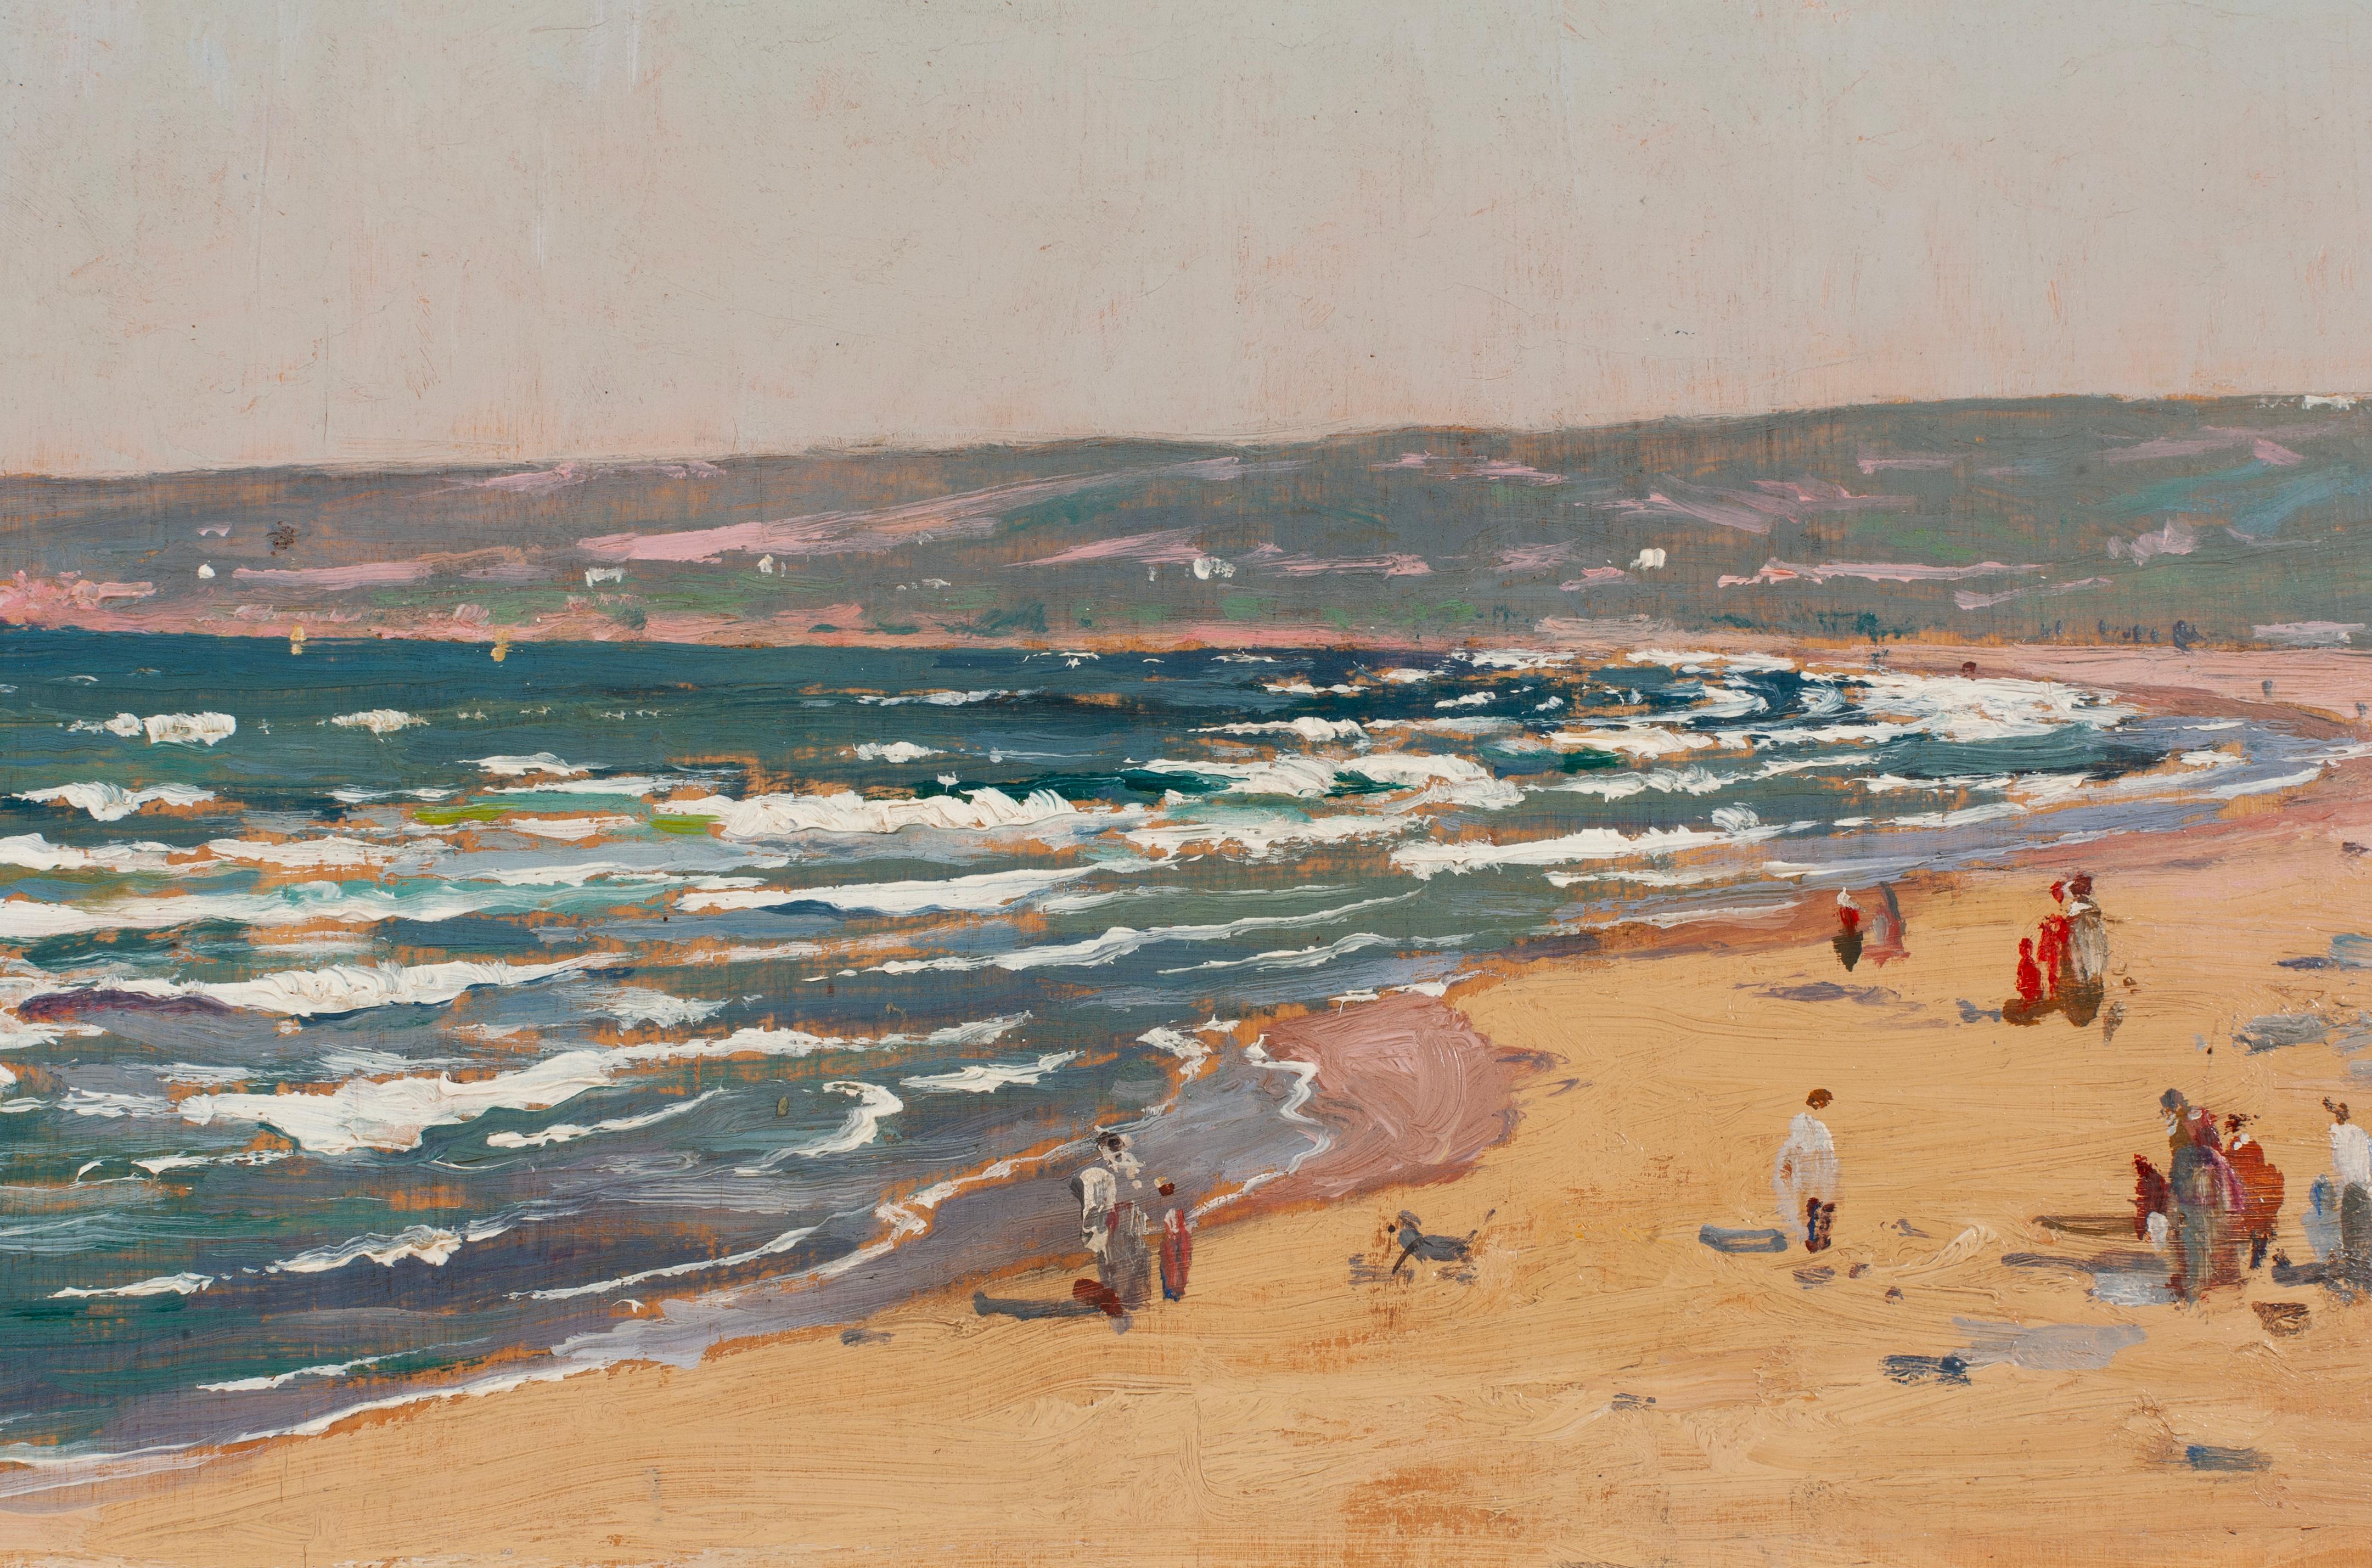 Eugène-François Deshayes (1808-1875) war ein französischer Künstler, der für seine Landschafts- und Meeresbilder bekannt war. Er wurde in Paris geboren und absolvierte zunächst eine Ausbildung als Rechtsanwalt, doch seine Leidenschaft für die Kunst